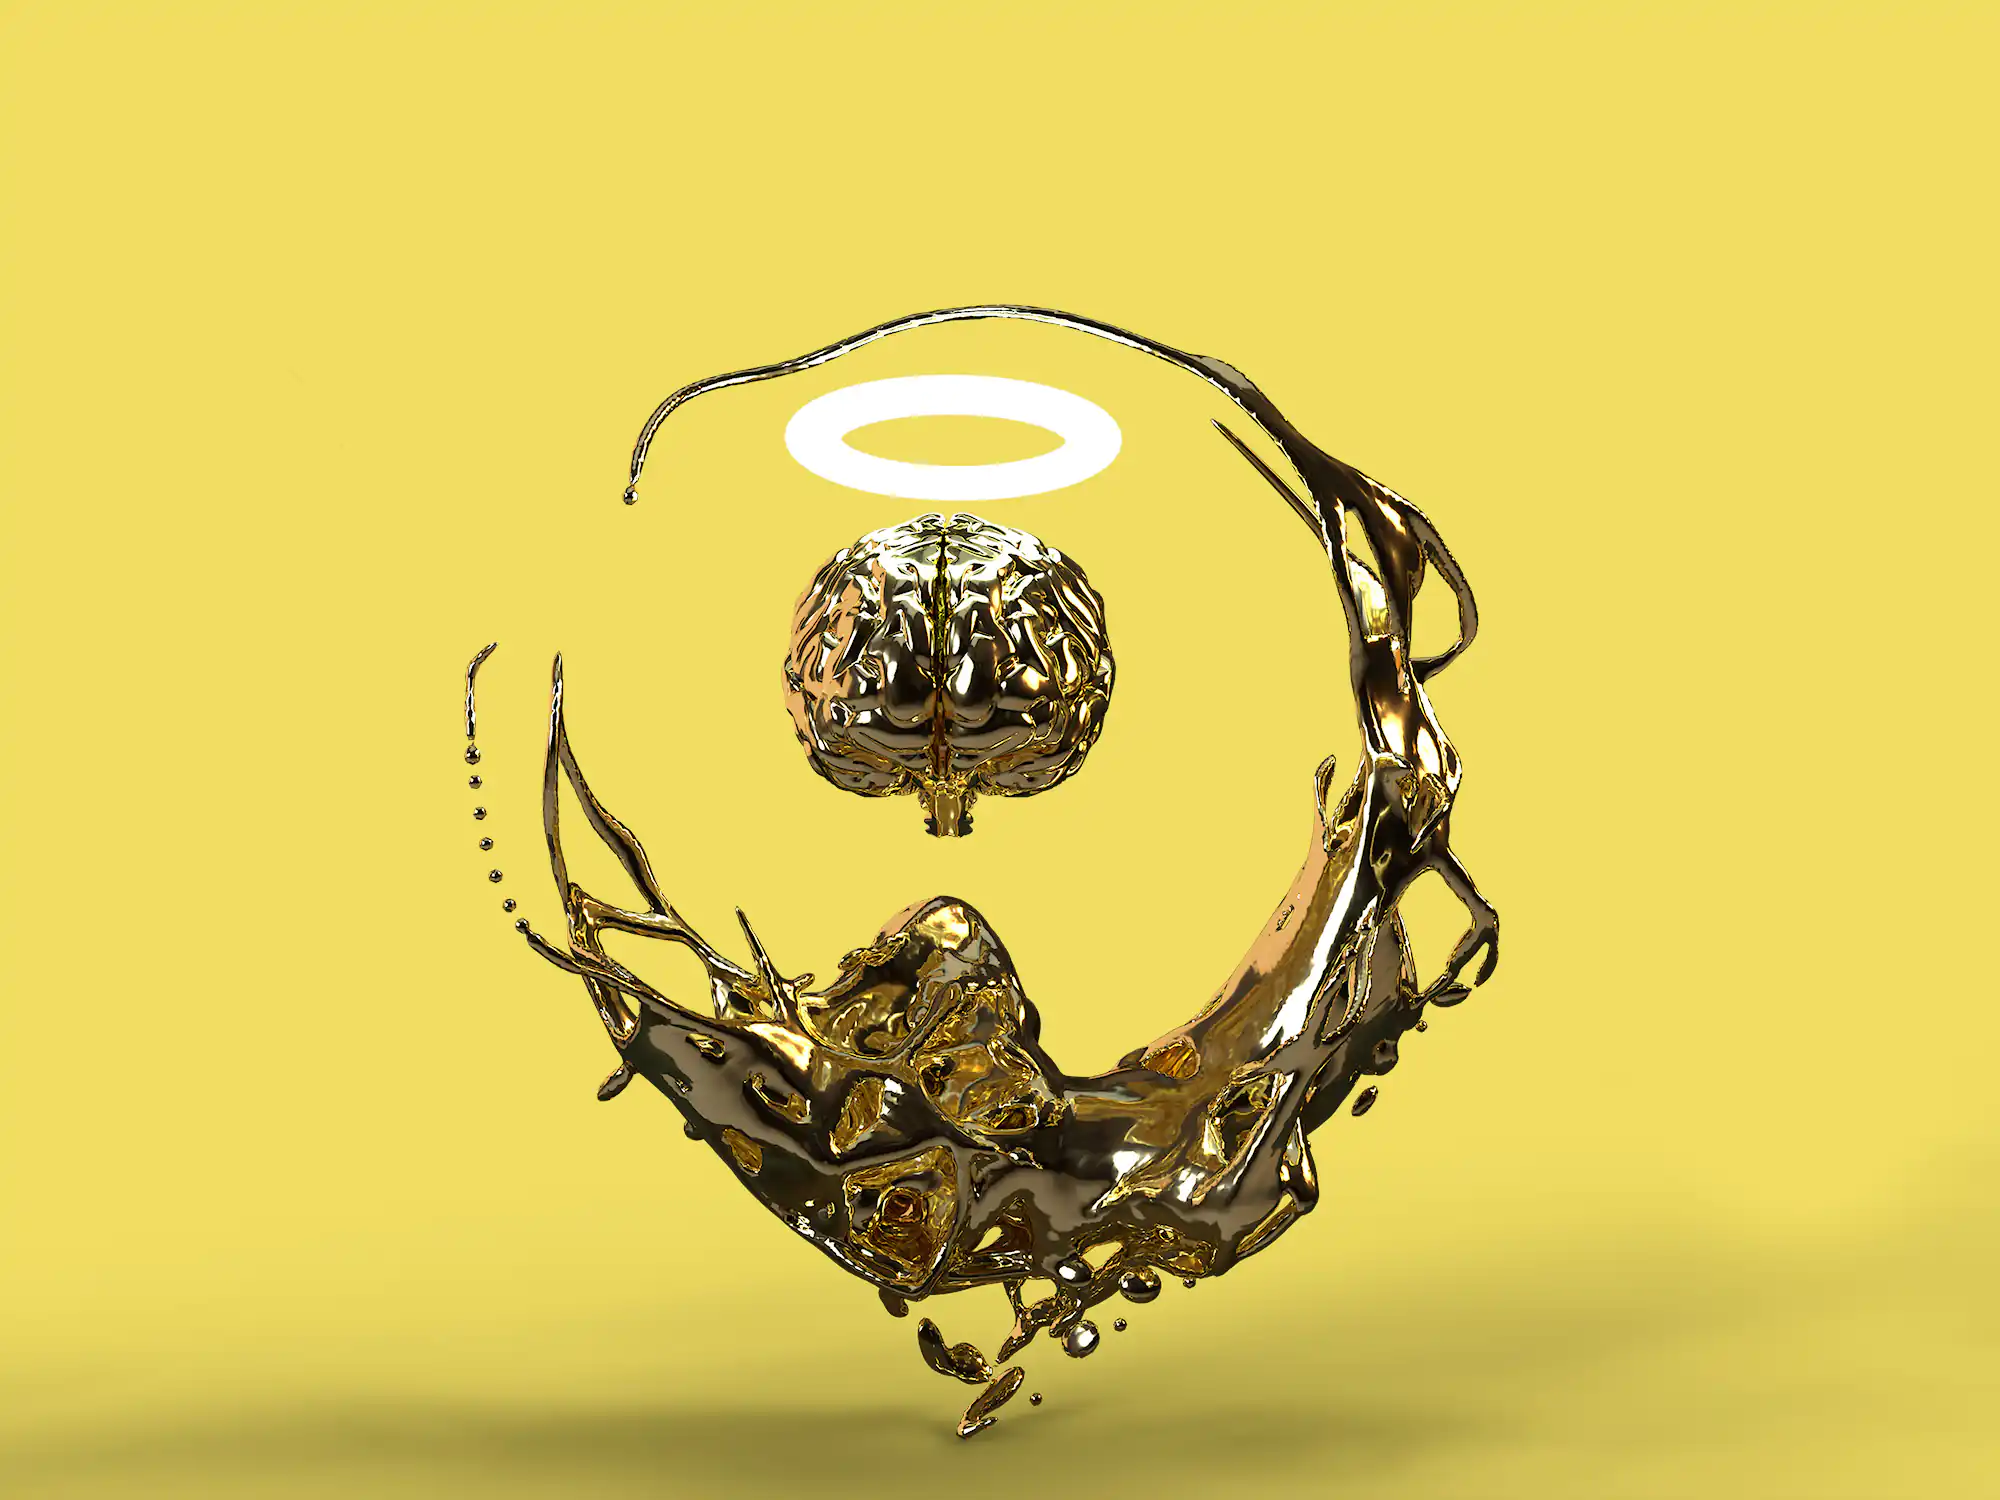 Diese goldene Skulptur zeigt ein Gehirn mit Heiligenschein in einem abstrakten Strudel aus flüssigem Gold.